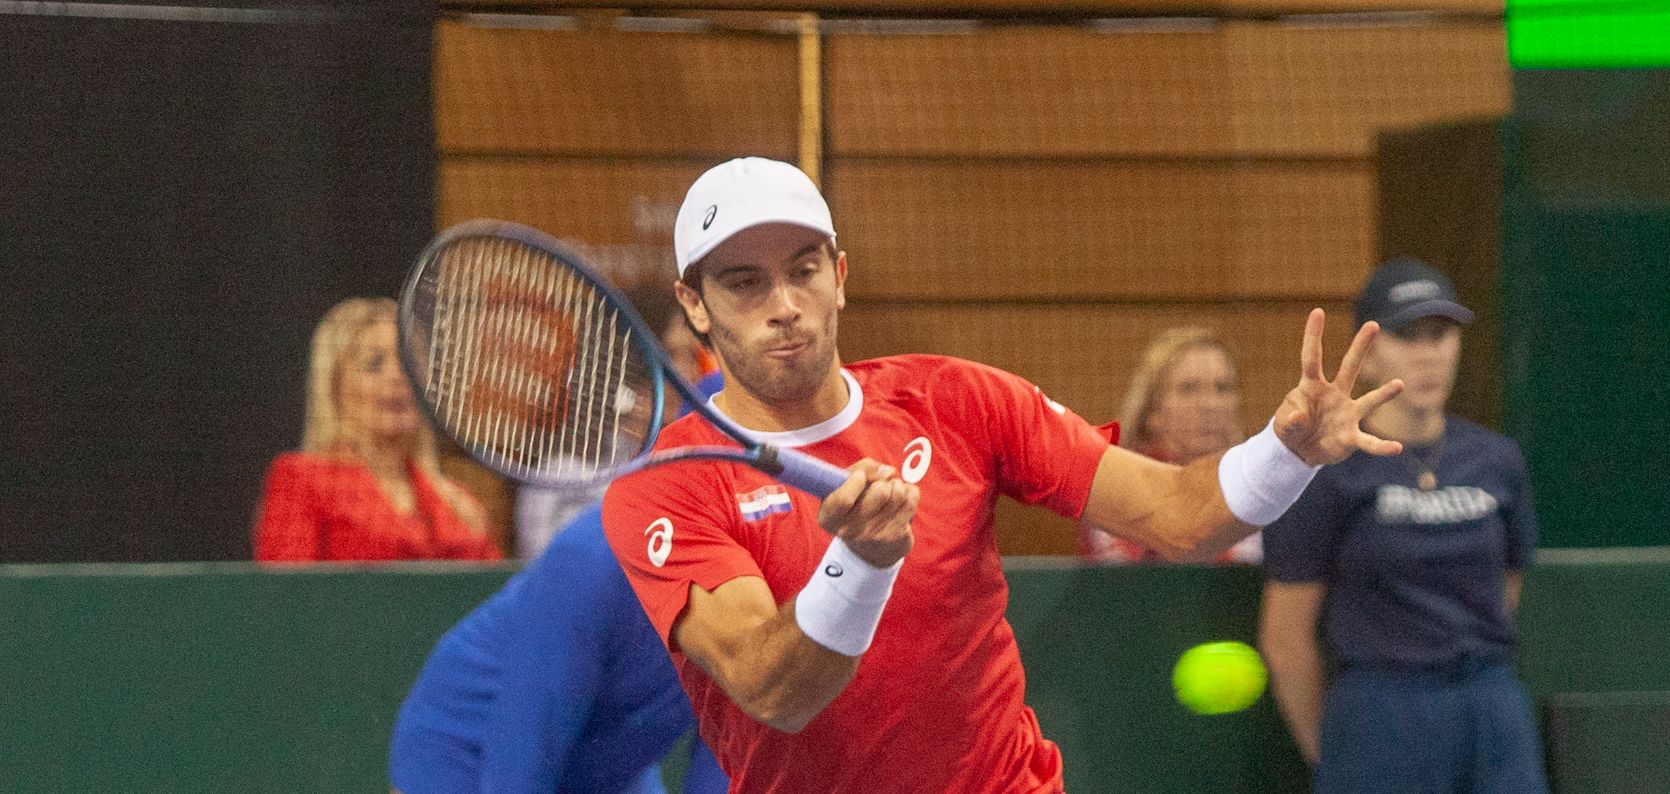 Švicarac Leandro Riedi zaustavio Bornu Ćorića u završnici ATP Challengera u Belgiji